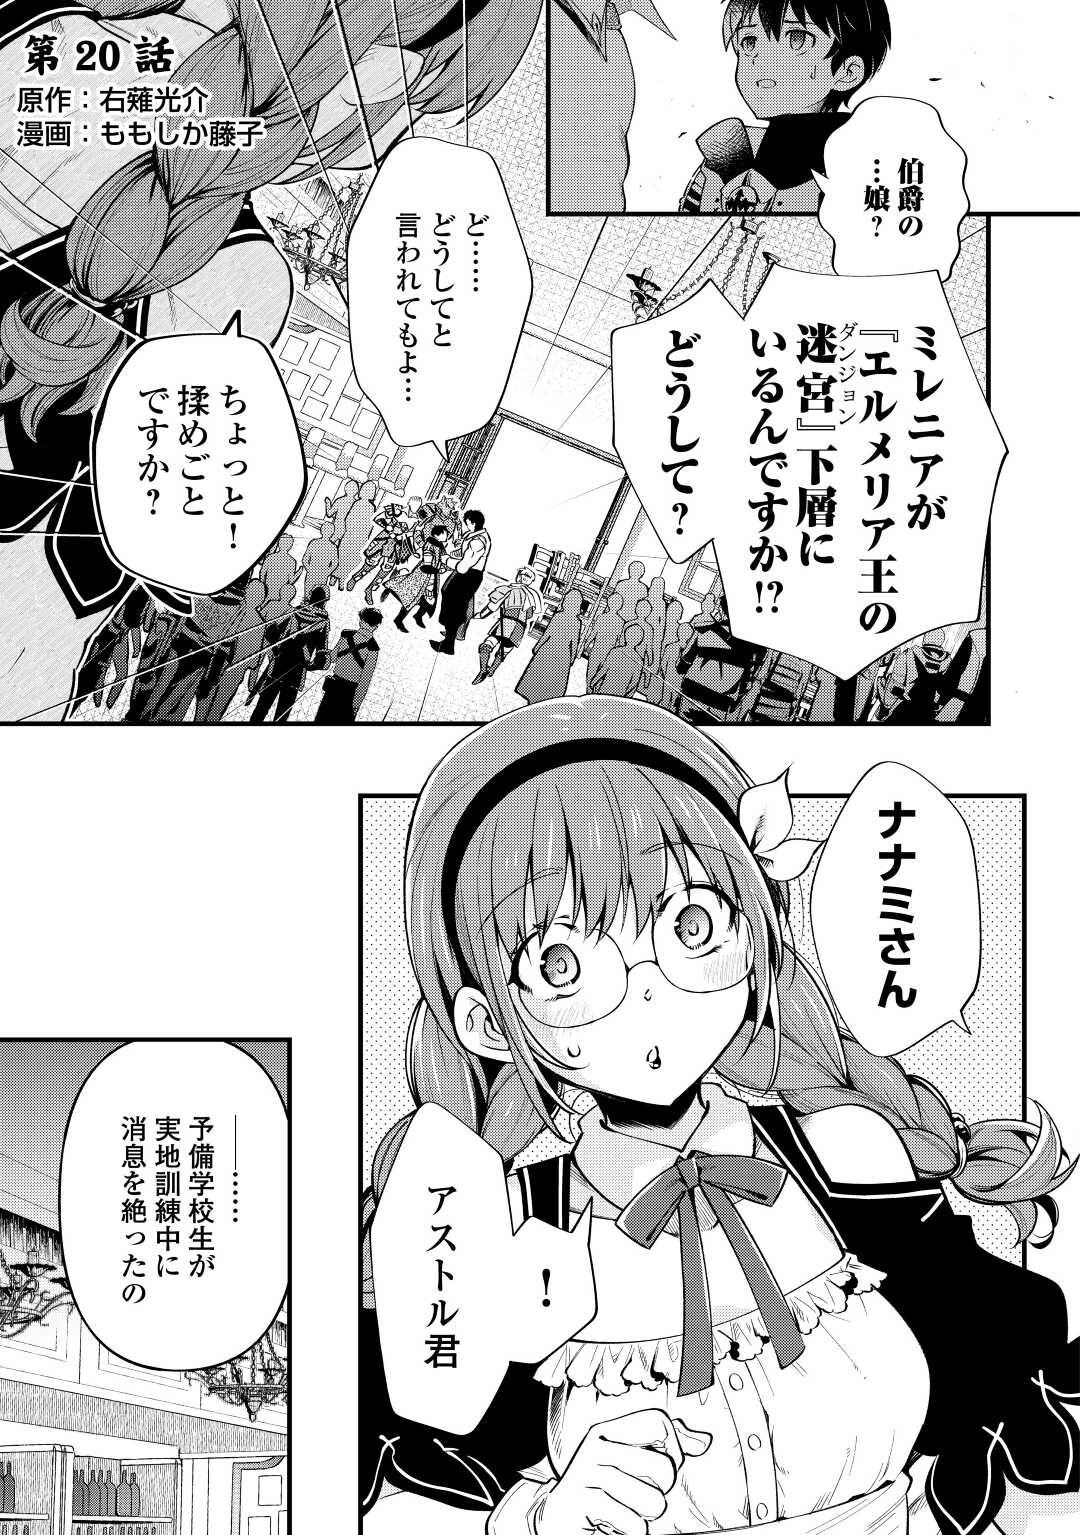 Ochikobore 1 Mahou Tsukai wa, Kyou mo Muishiki ni Cheat o Tsukau - Chapter 20 - Page 1